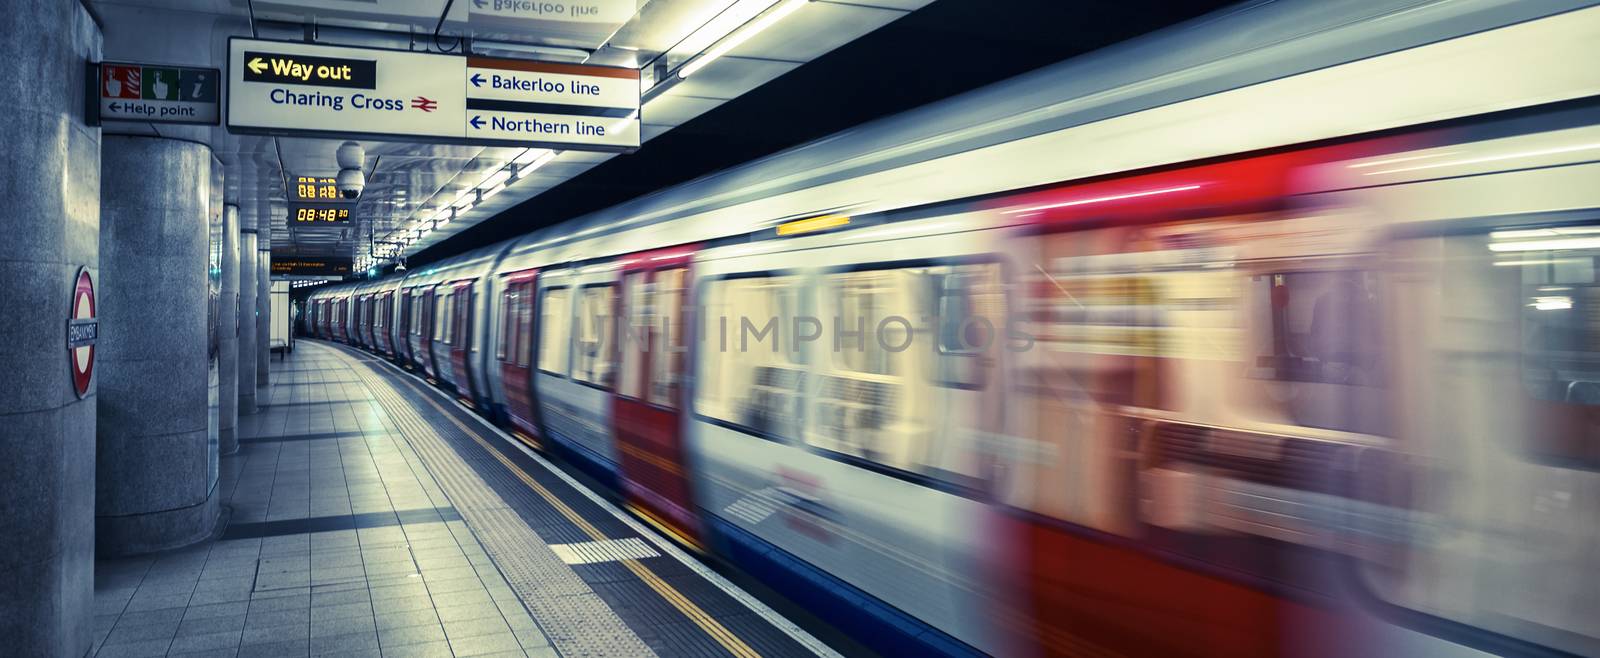 London subway by vwalakte